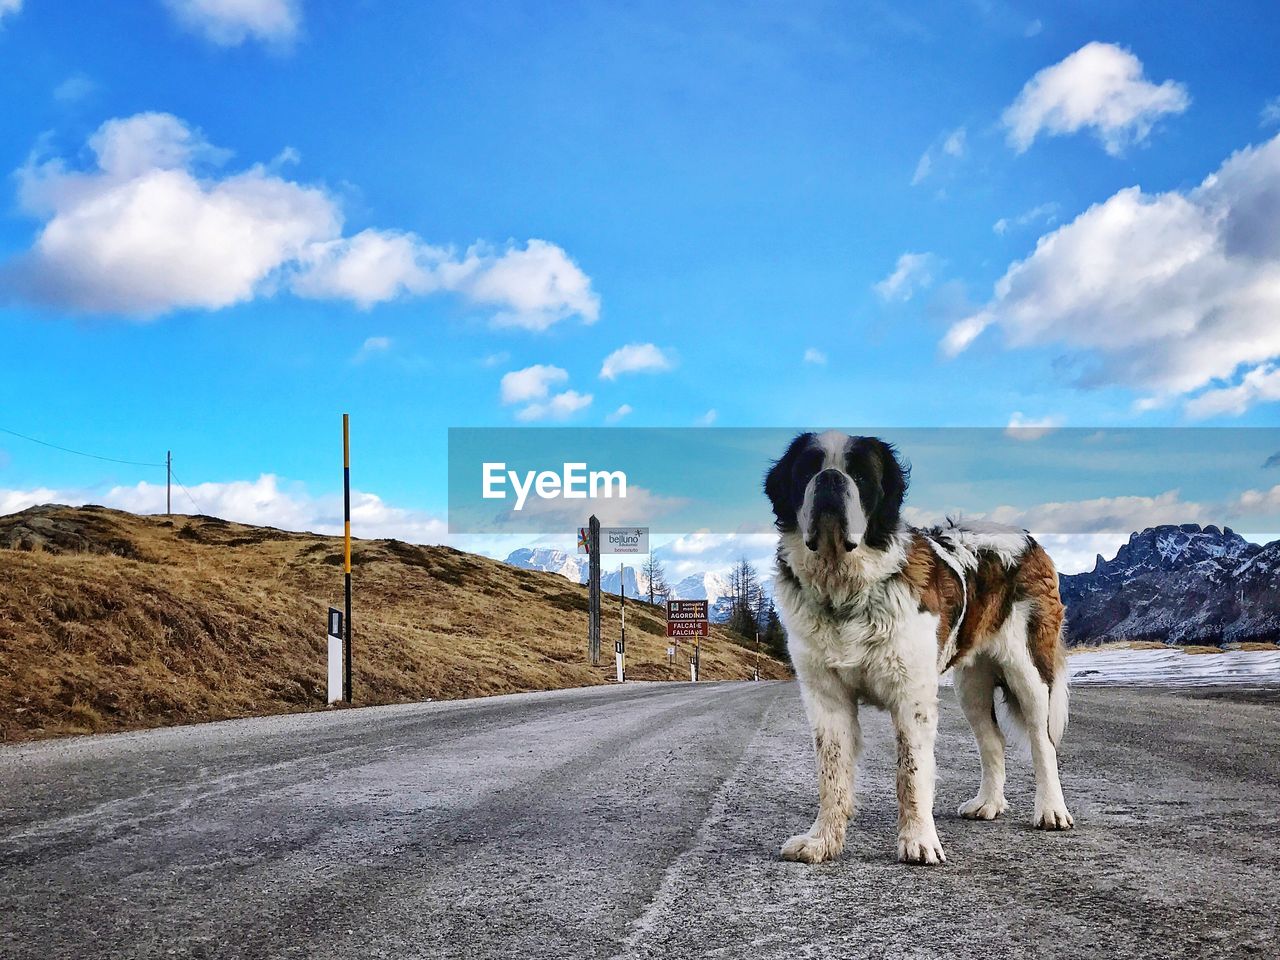 St bernard dog standing on road against sky